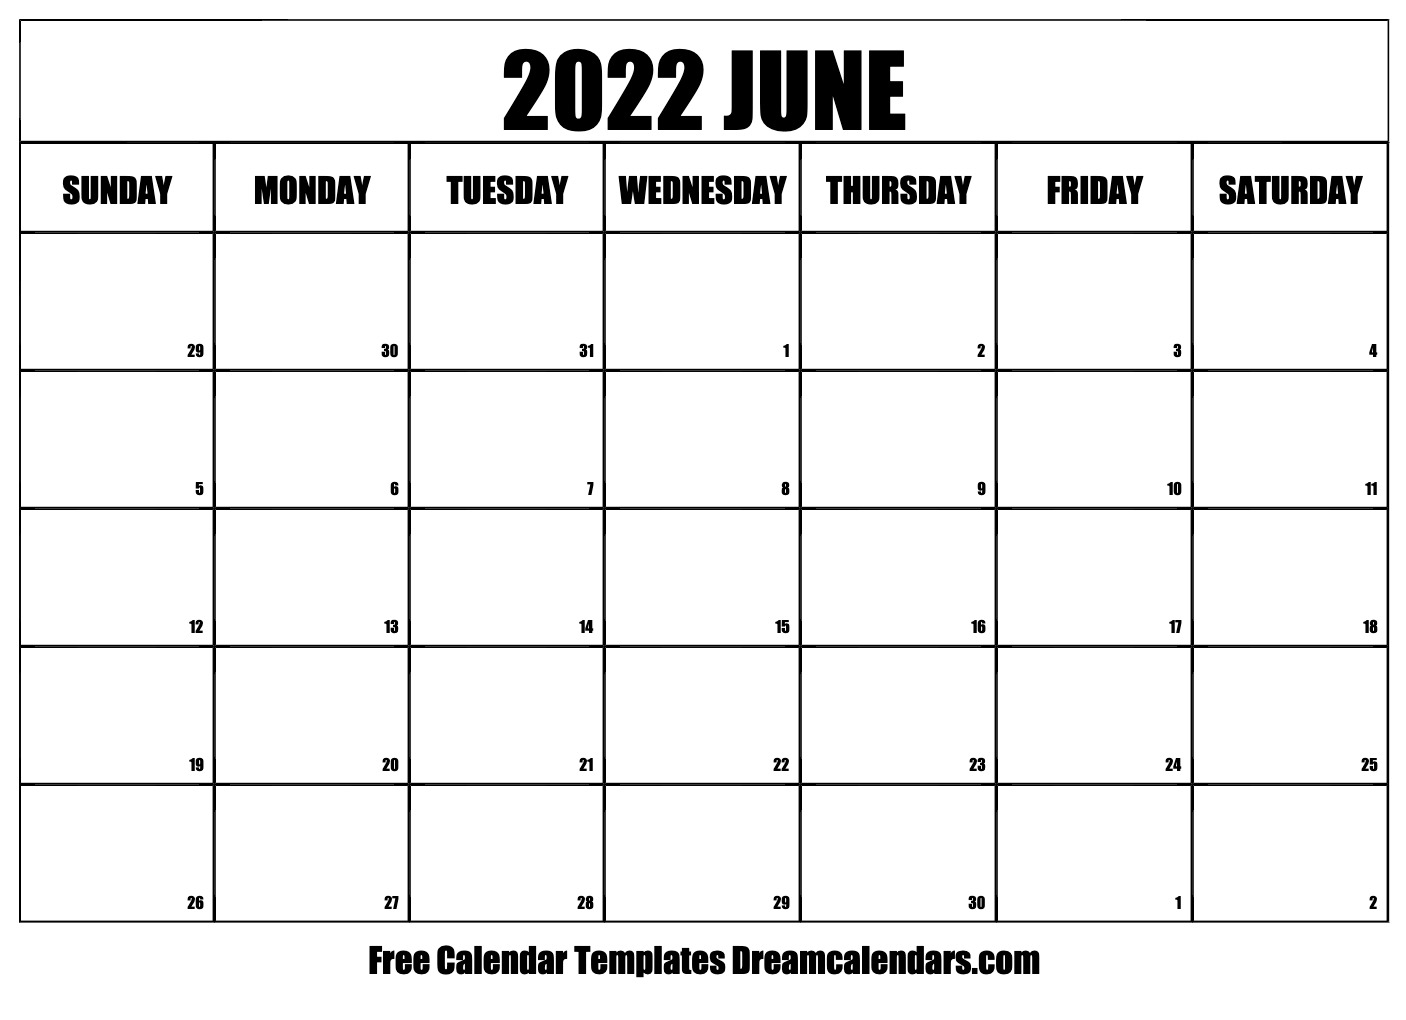 June 2022 Regents Schedule Download Printable June 2022 Calendars